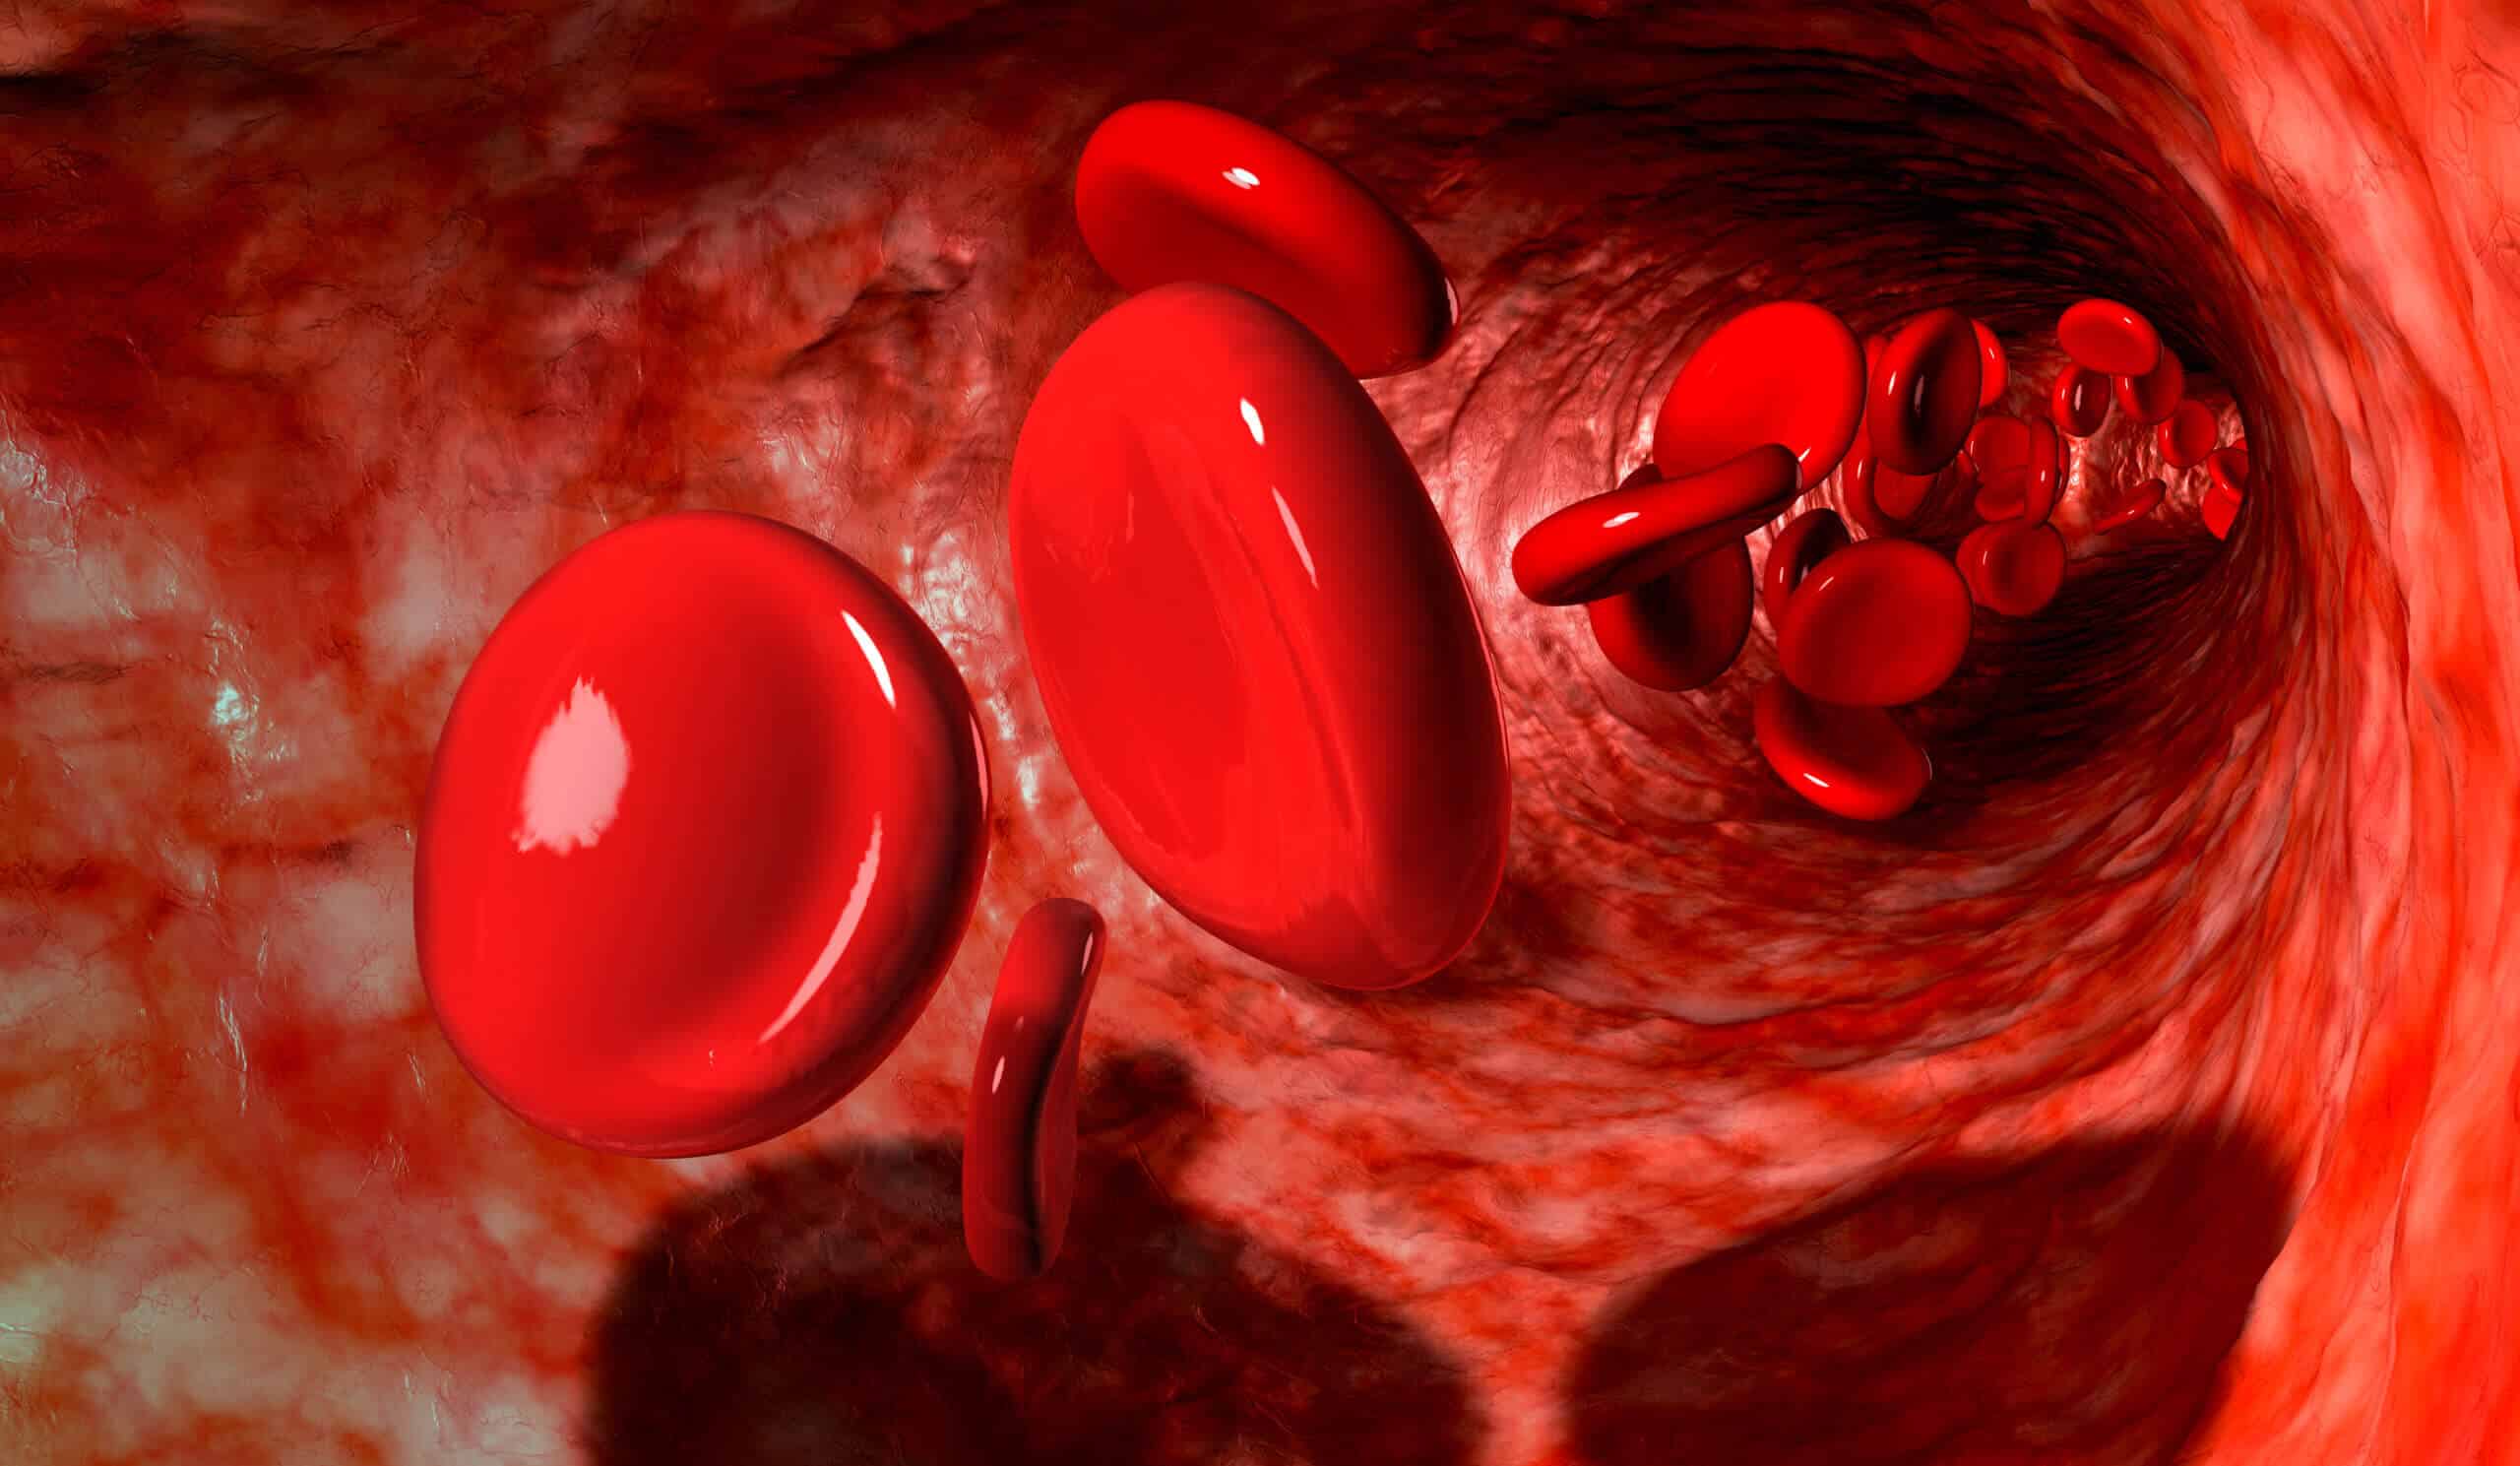 תאי דם אדומים בווריד (אילוסטרציה) <a href="https://depositphotos.com. ">איור: depositphotos.com</a>